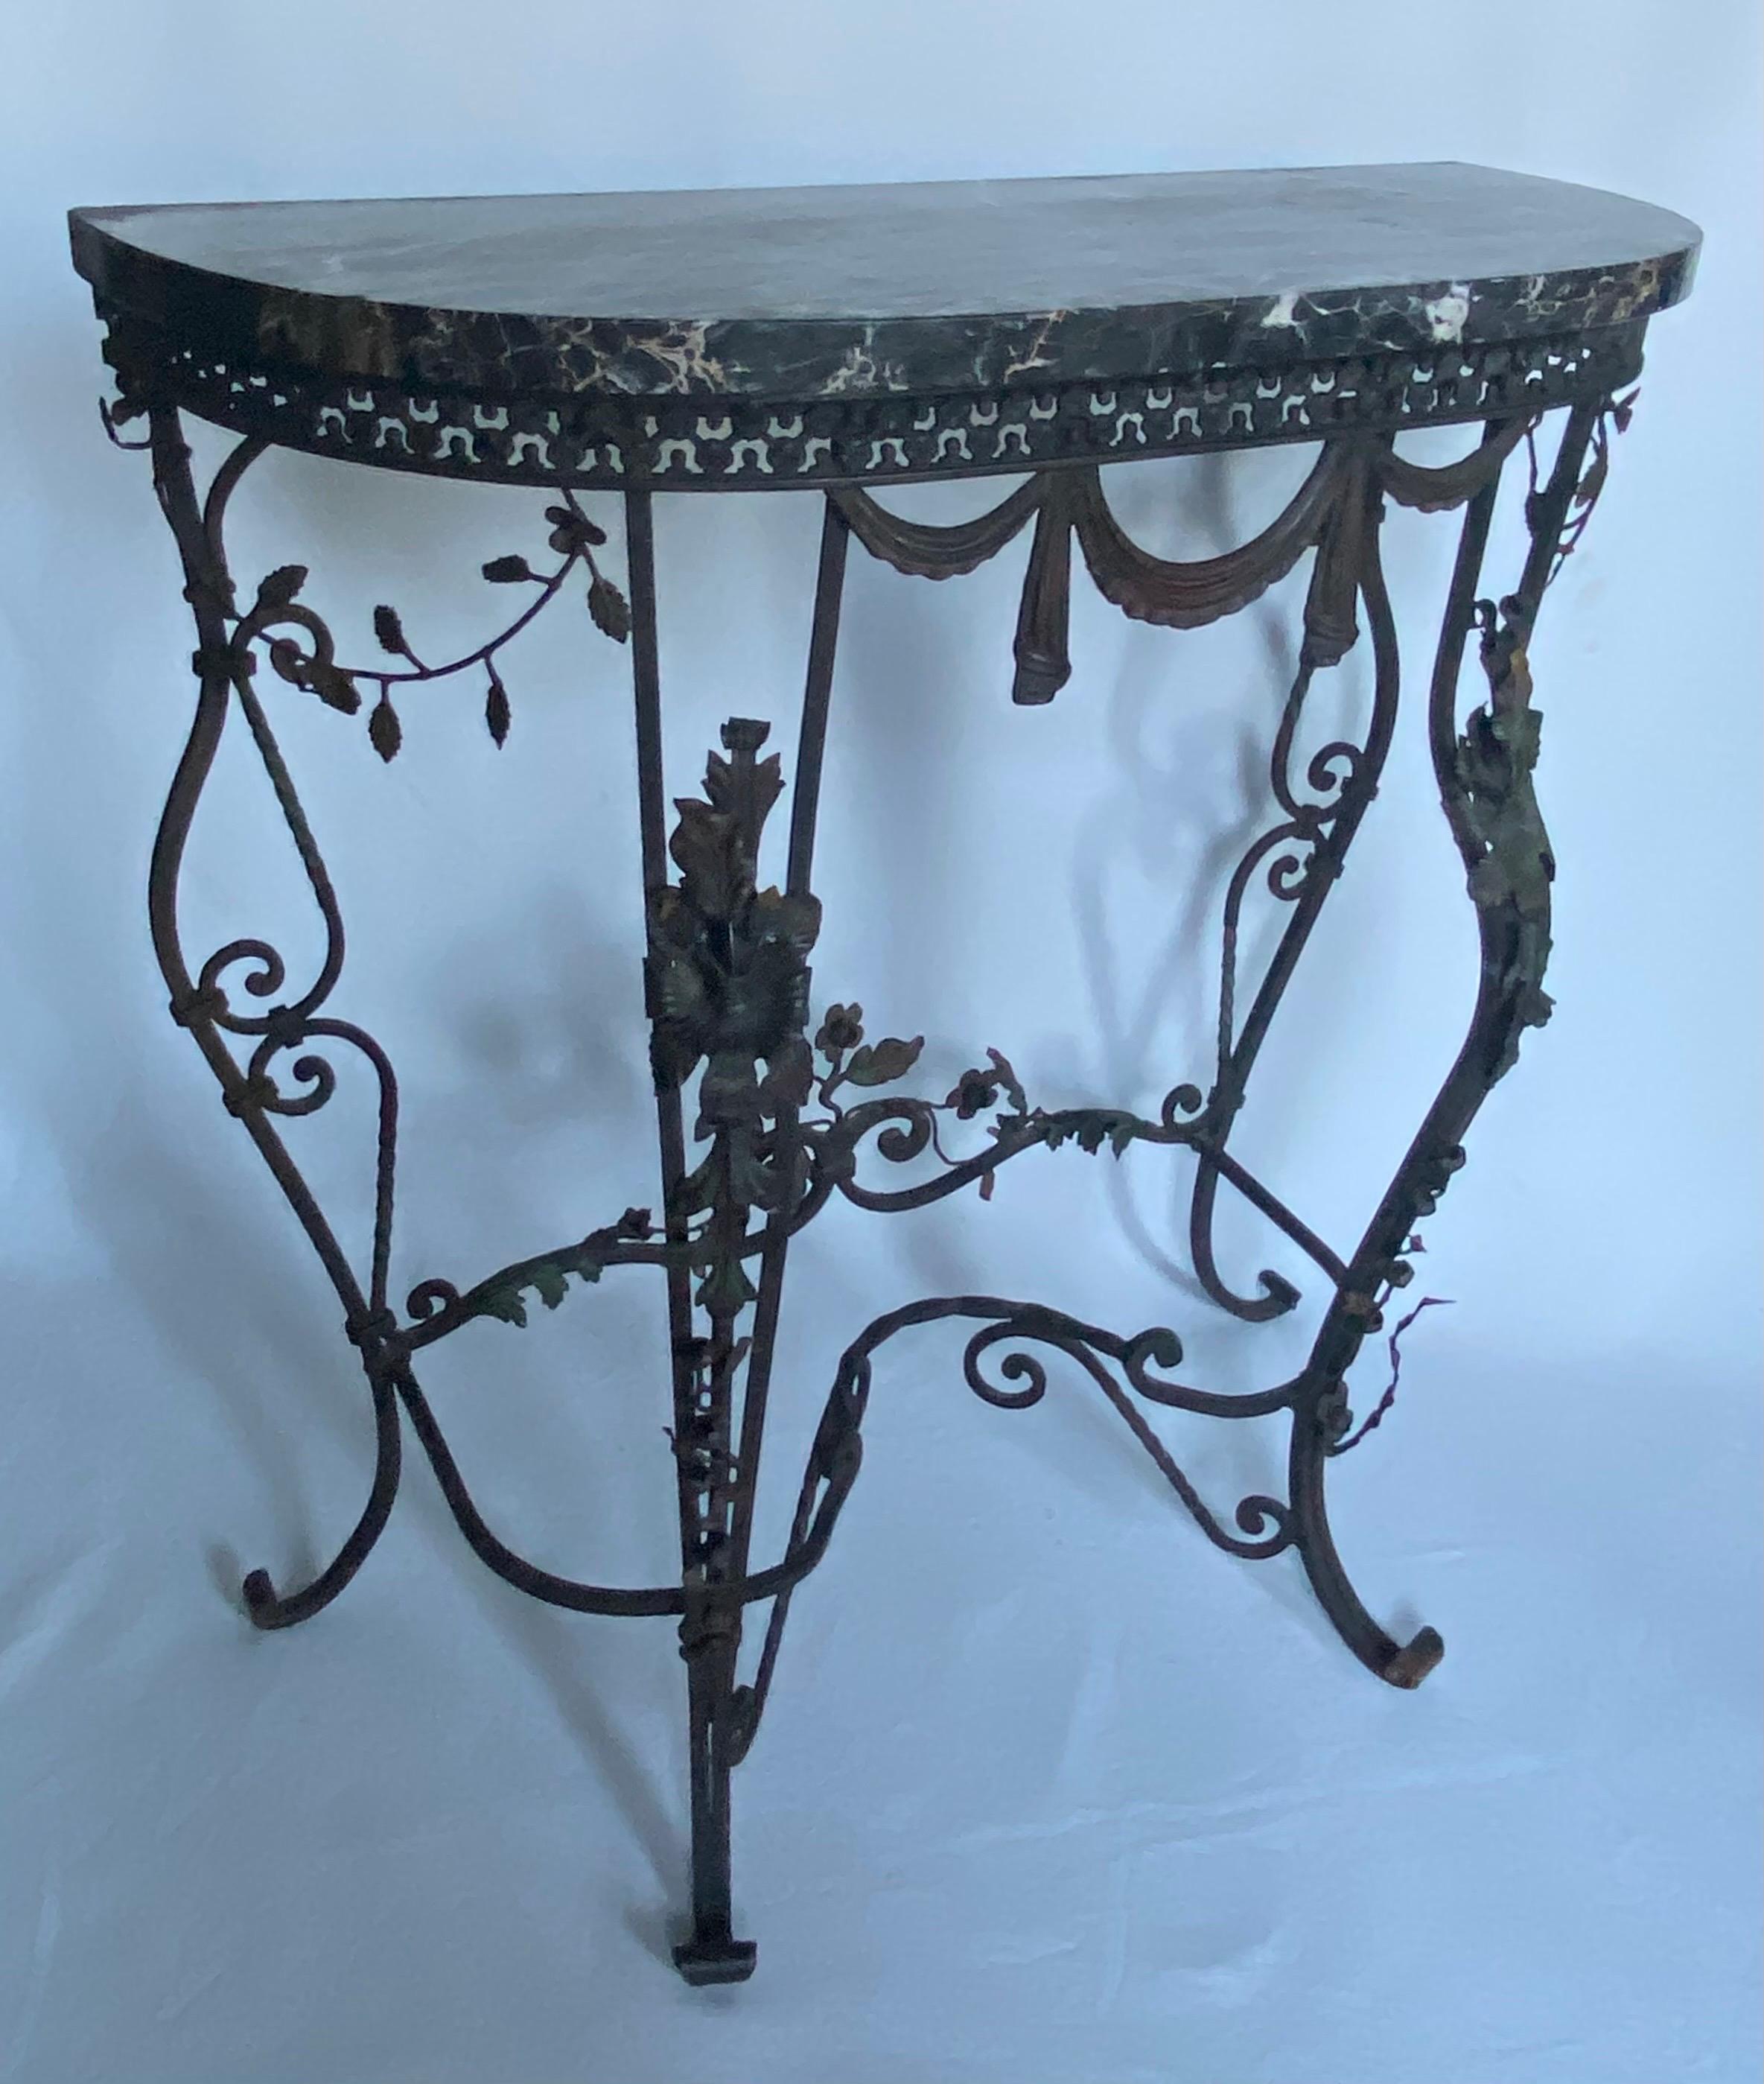 Jolie table console en fer forgé français avec un plateau en marbre noir magnifiquement veiné. Cette table en forme de demi-lune très décorée présente des motifs floraux botaniques et des guirlandes drapées. Une qualité de fabrication et un style